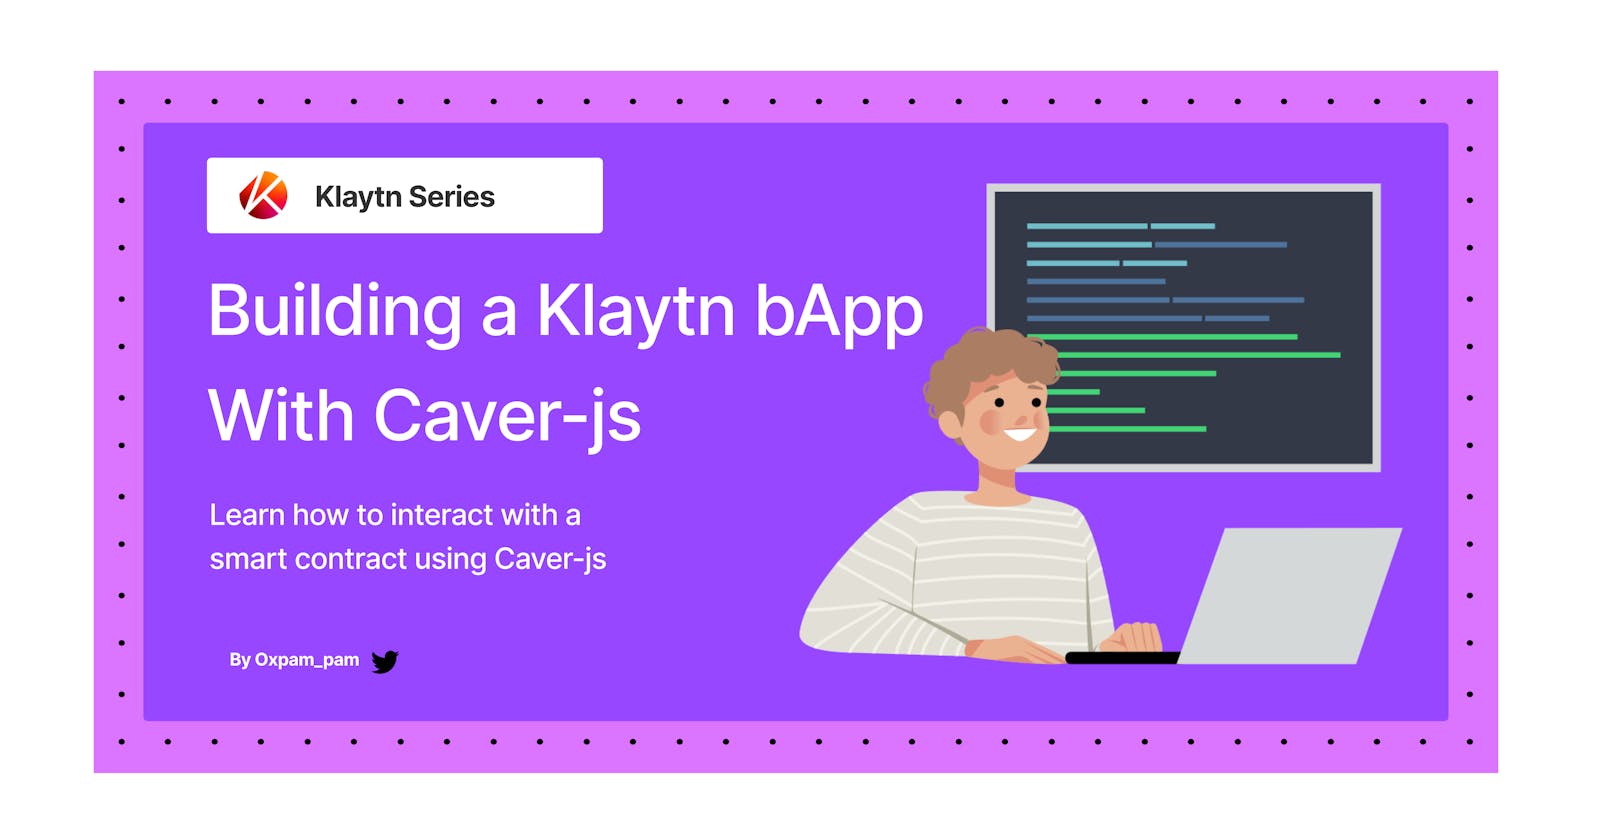 Building a Klaytn bApp With Caver-js